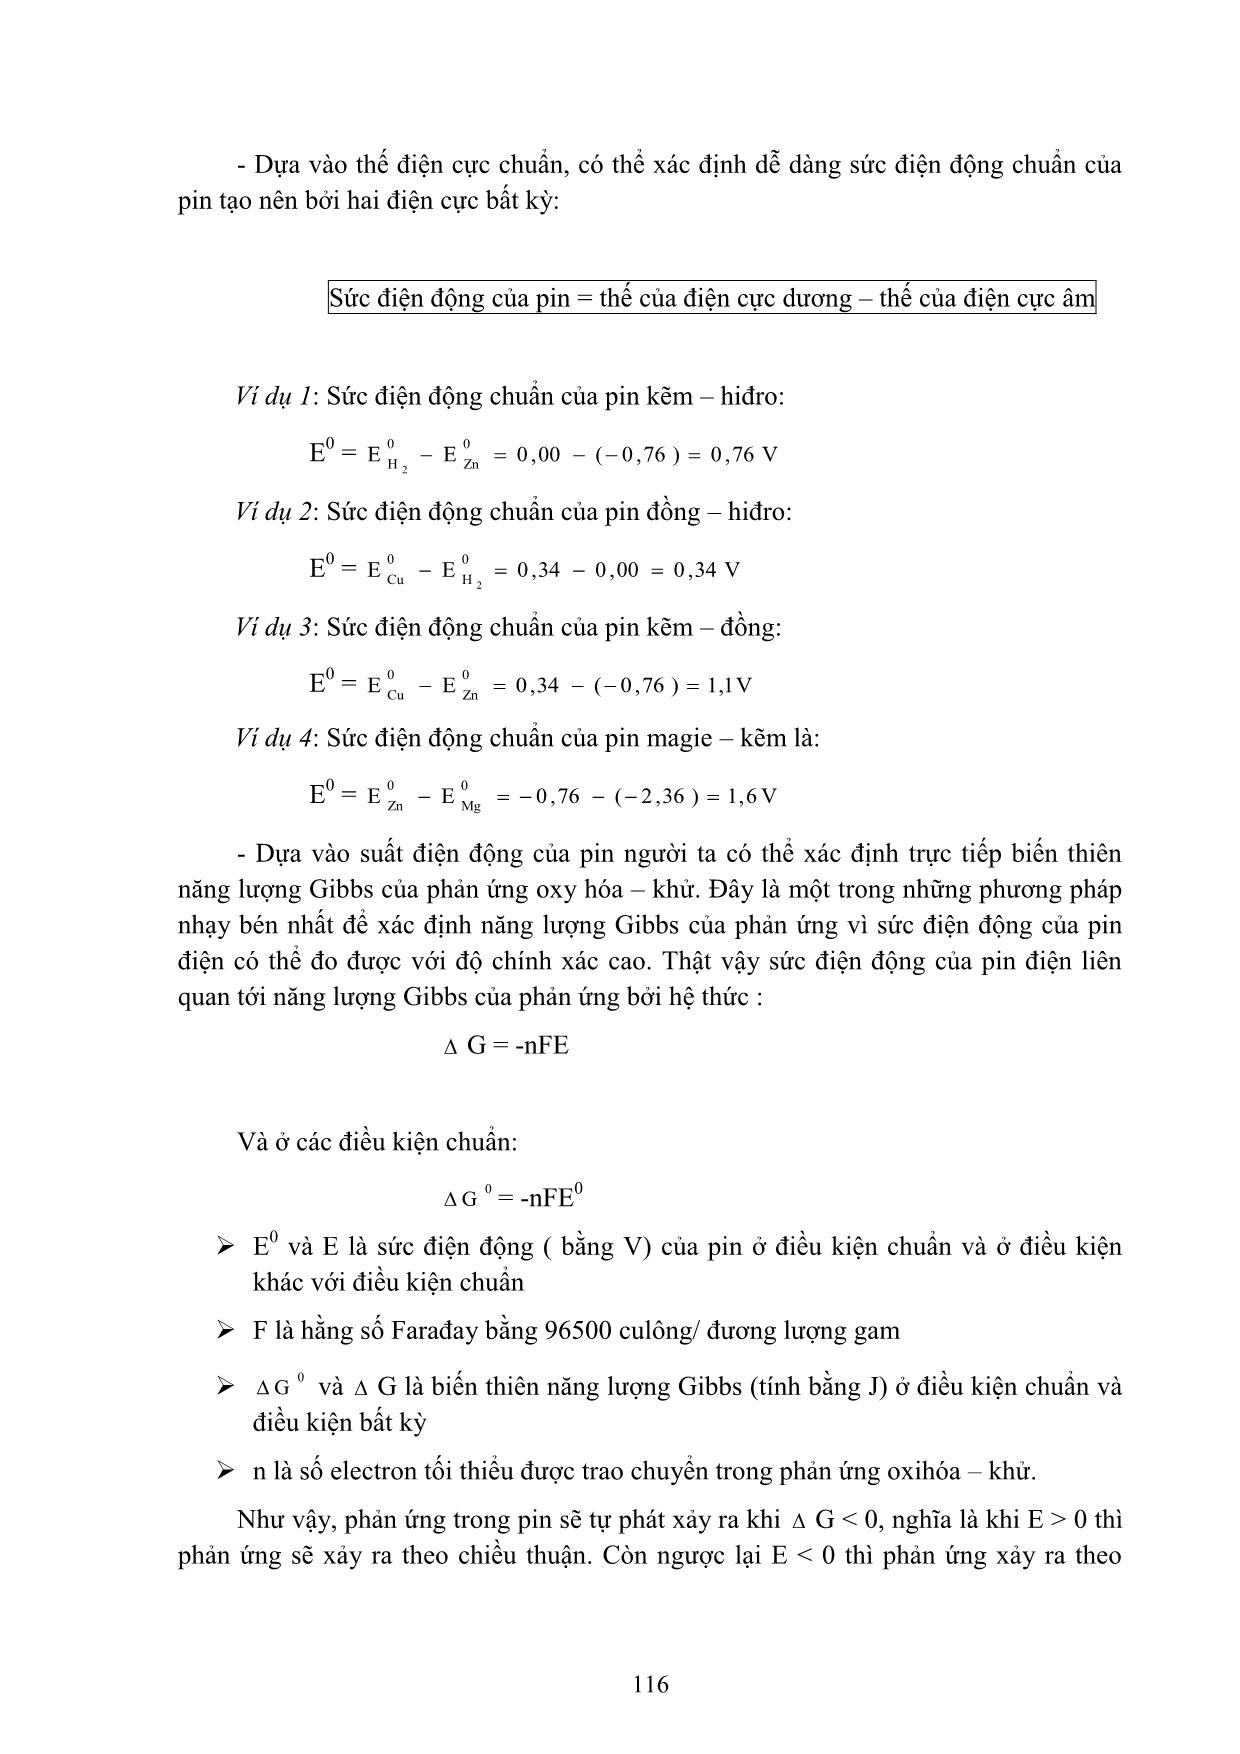 Bài giảng Hóa học đại cương A - Hoàng Hải Hậu (Phần 2) trang 9